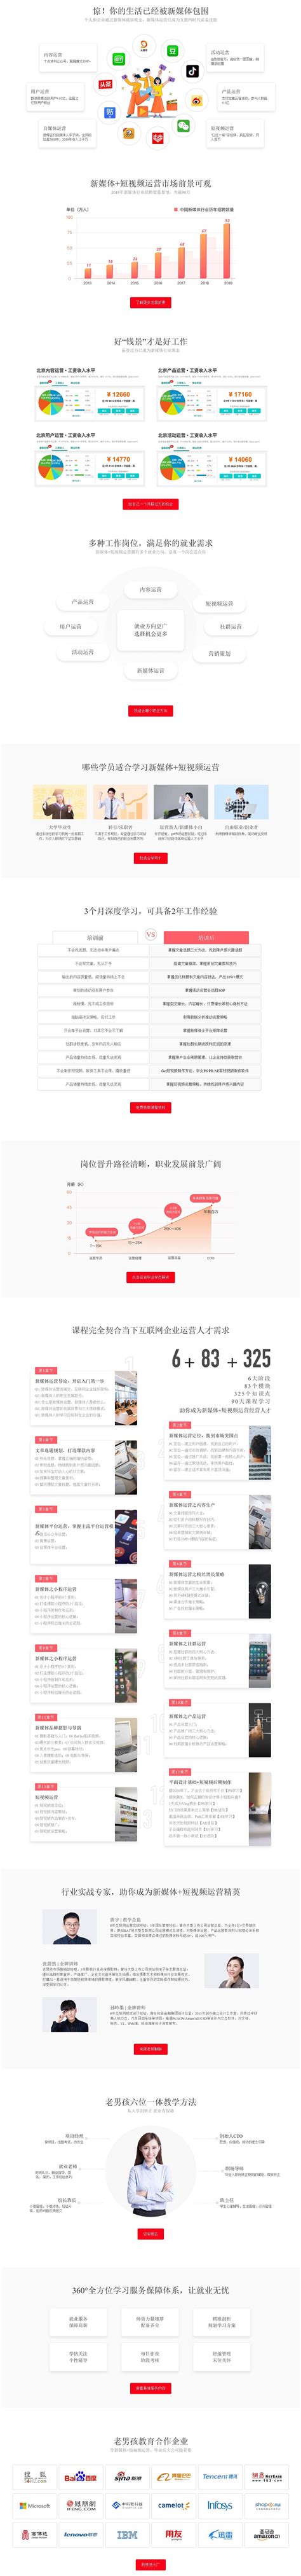 2020年中国短视频广告收入、广告形式及平台市场率分析：快手平台广告收入增速达225%[图]_智研咨询